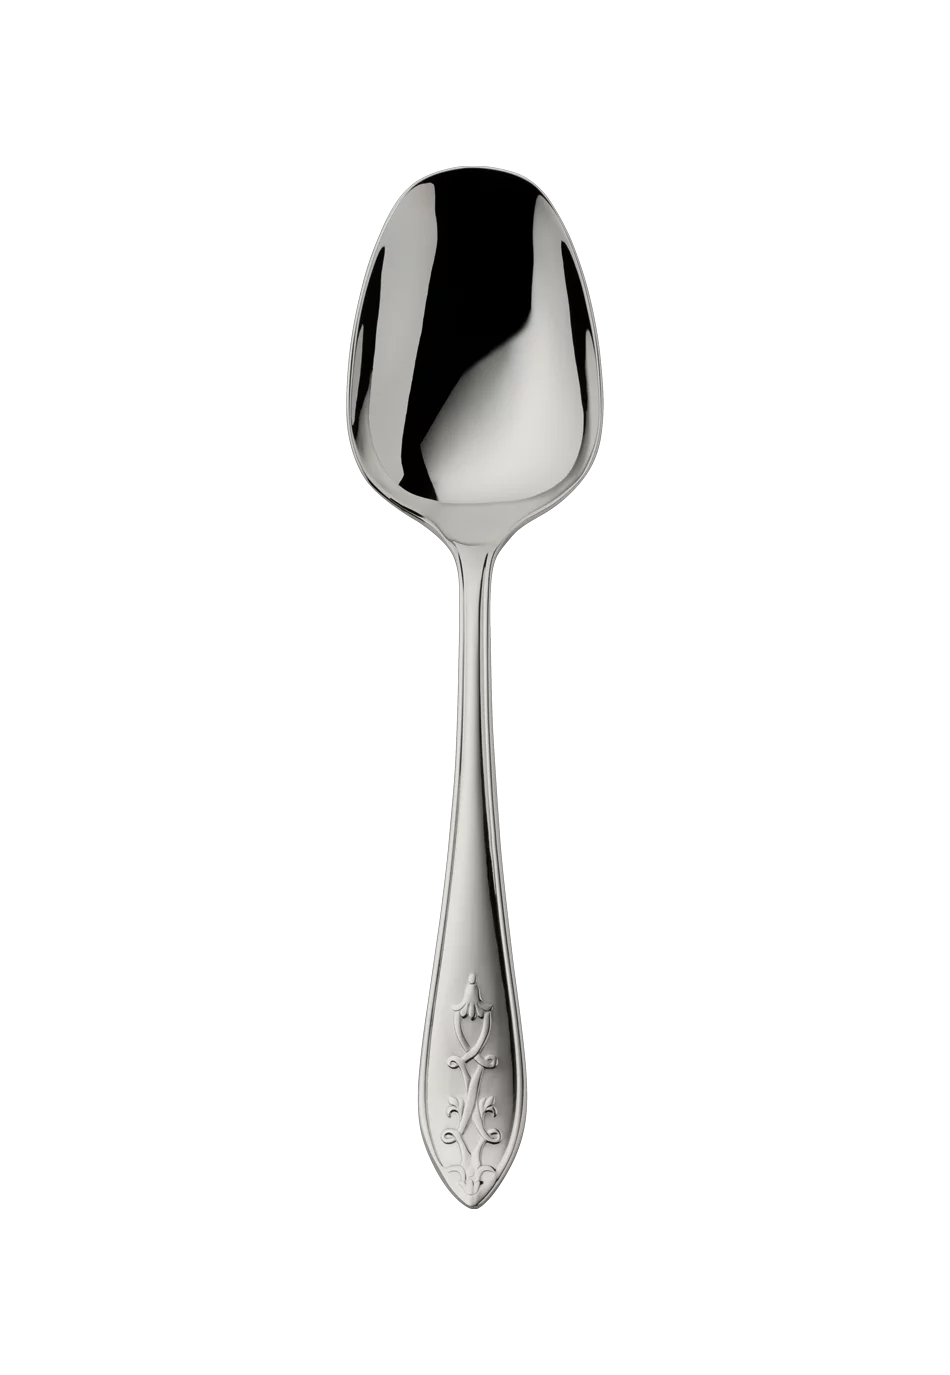 Jardin Serving Spoon (18/8 stainless steel)